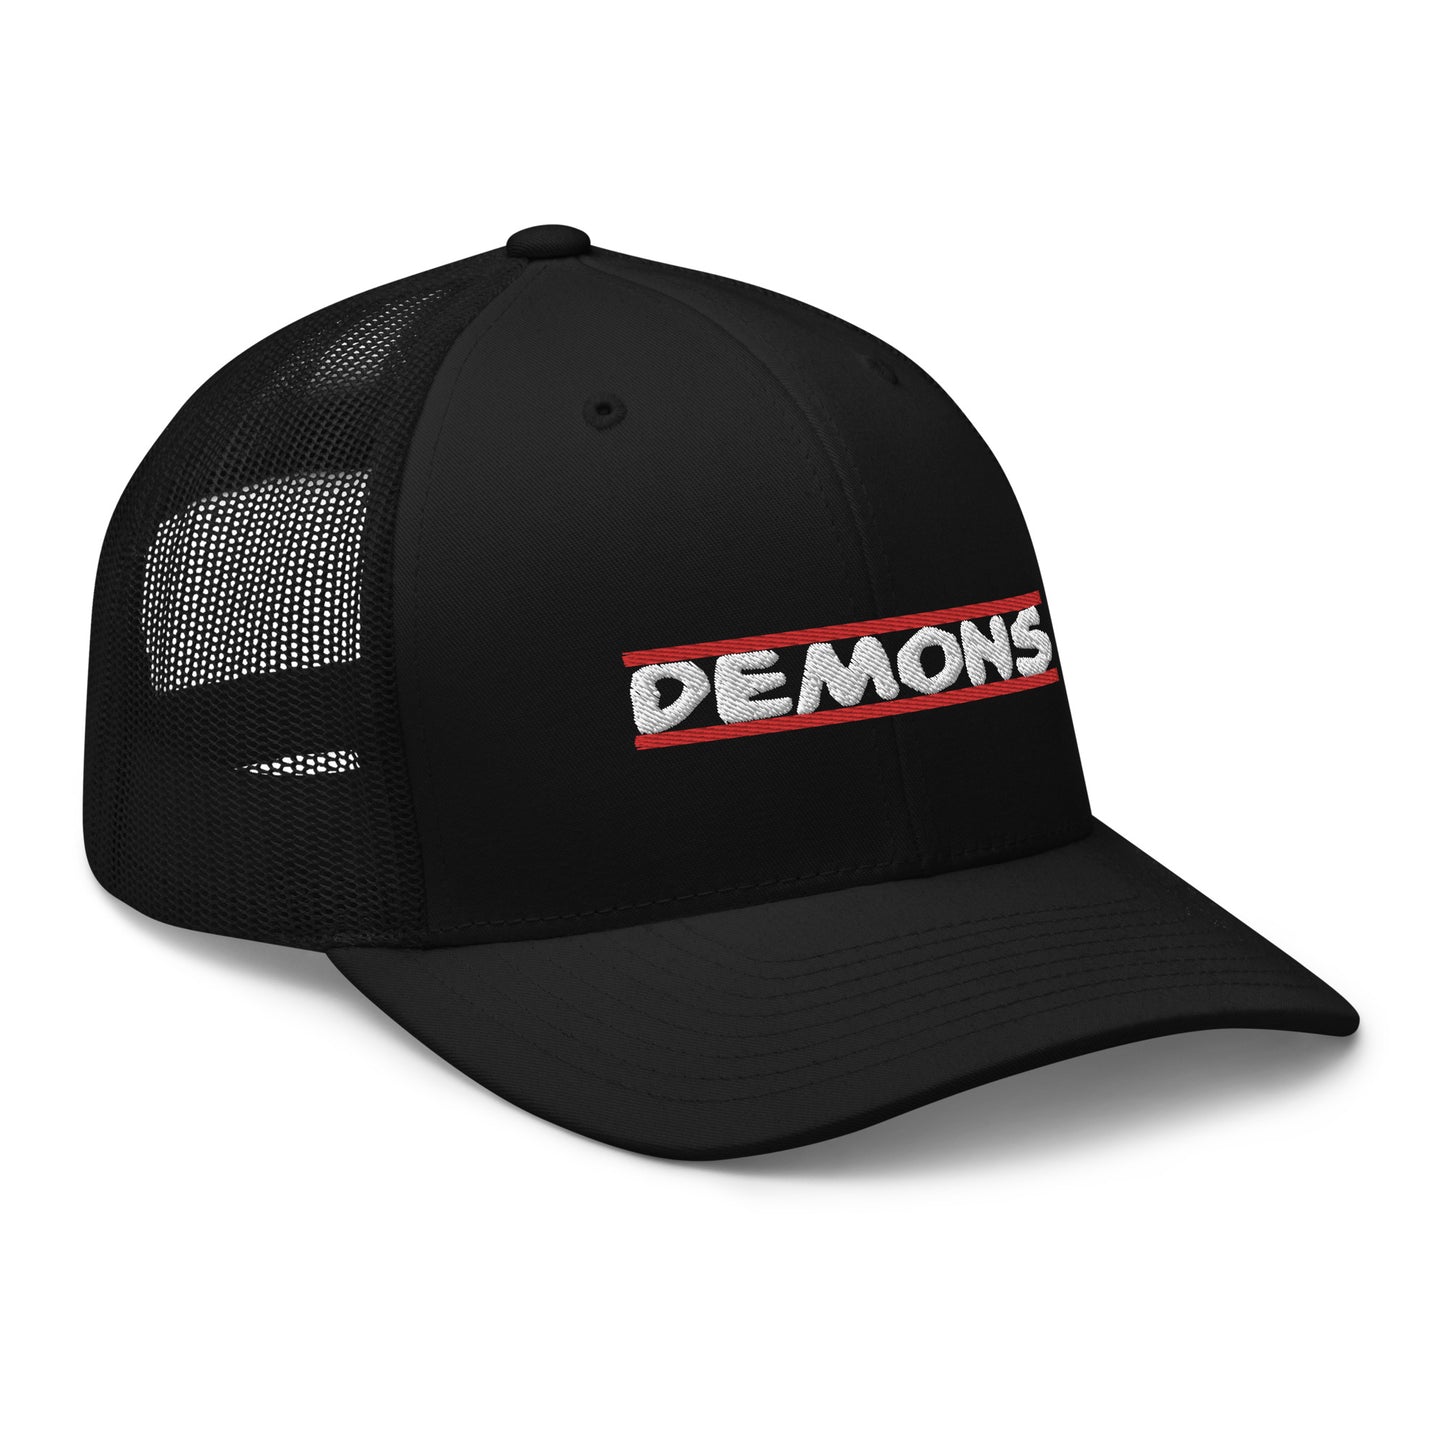 Demons Cap